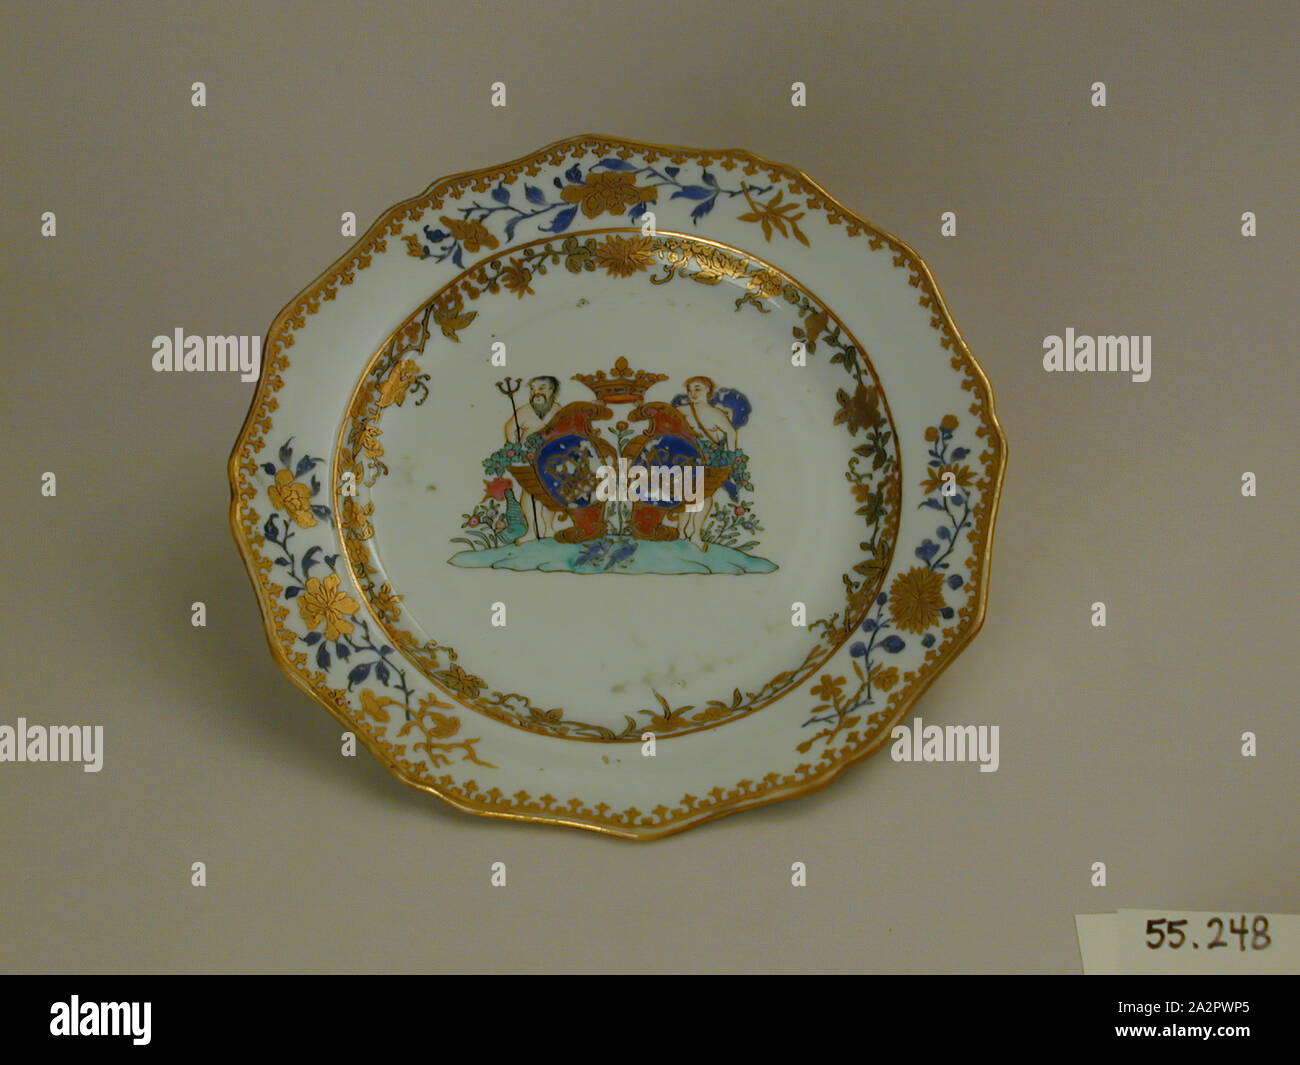 Inconnu (Chinois), assiette, fin du xviiie siècle, émaillée porcelaine pâte dure avec émail polychrome et dorure, Hauteur x diamètre : 1 x 8 3/4 in. (2,5 x 22,2 cm Banque D'Images